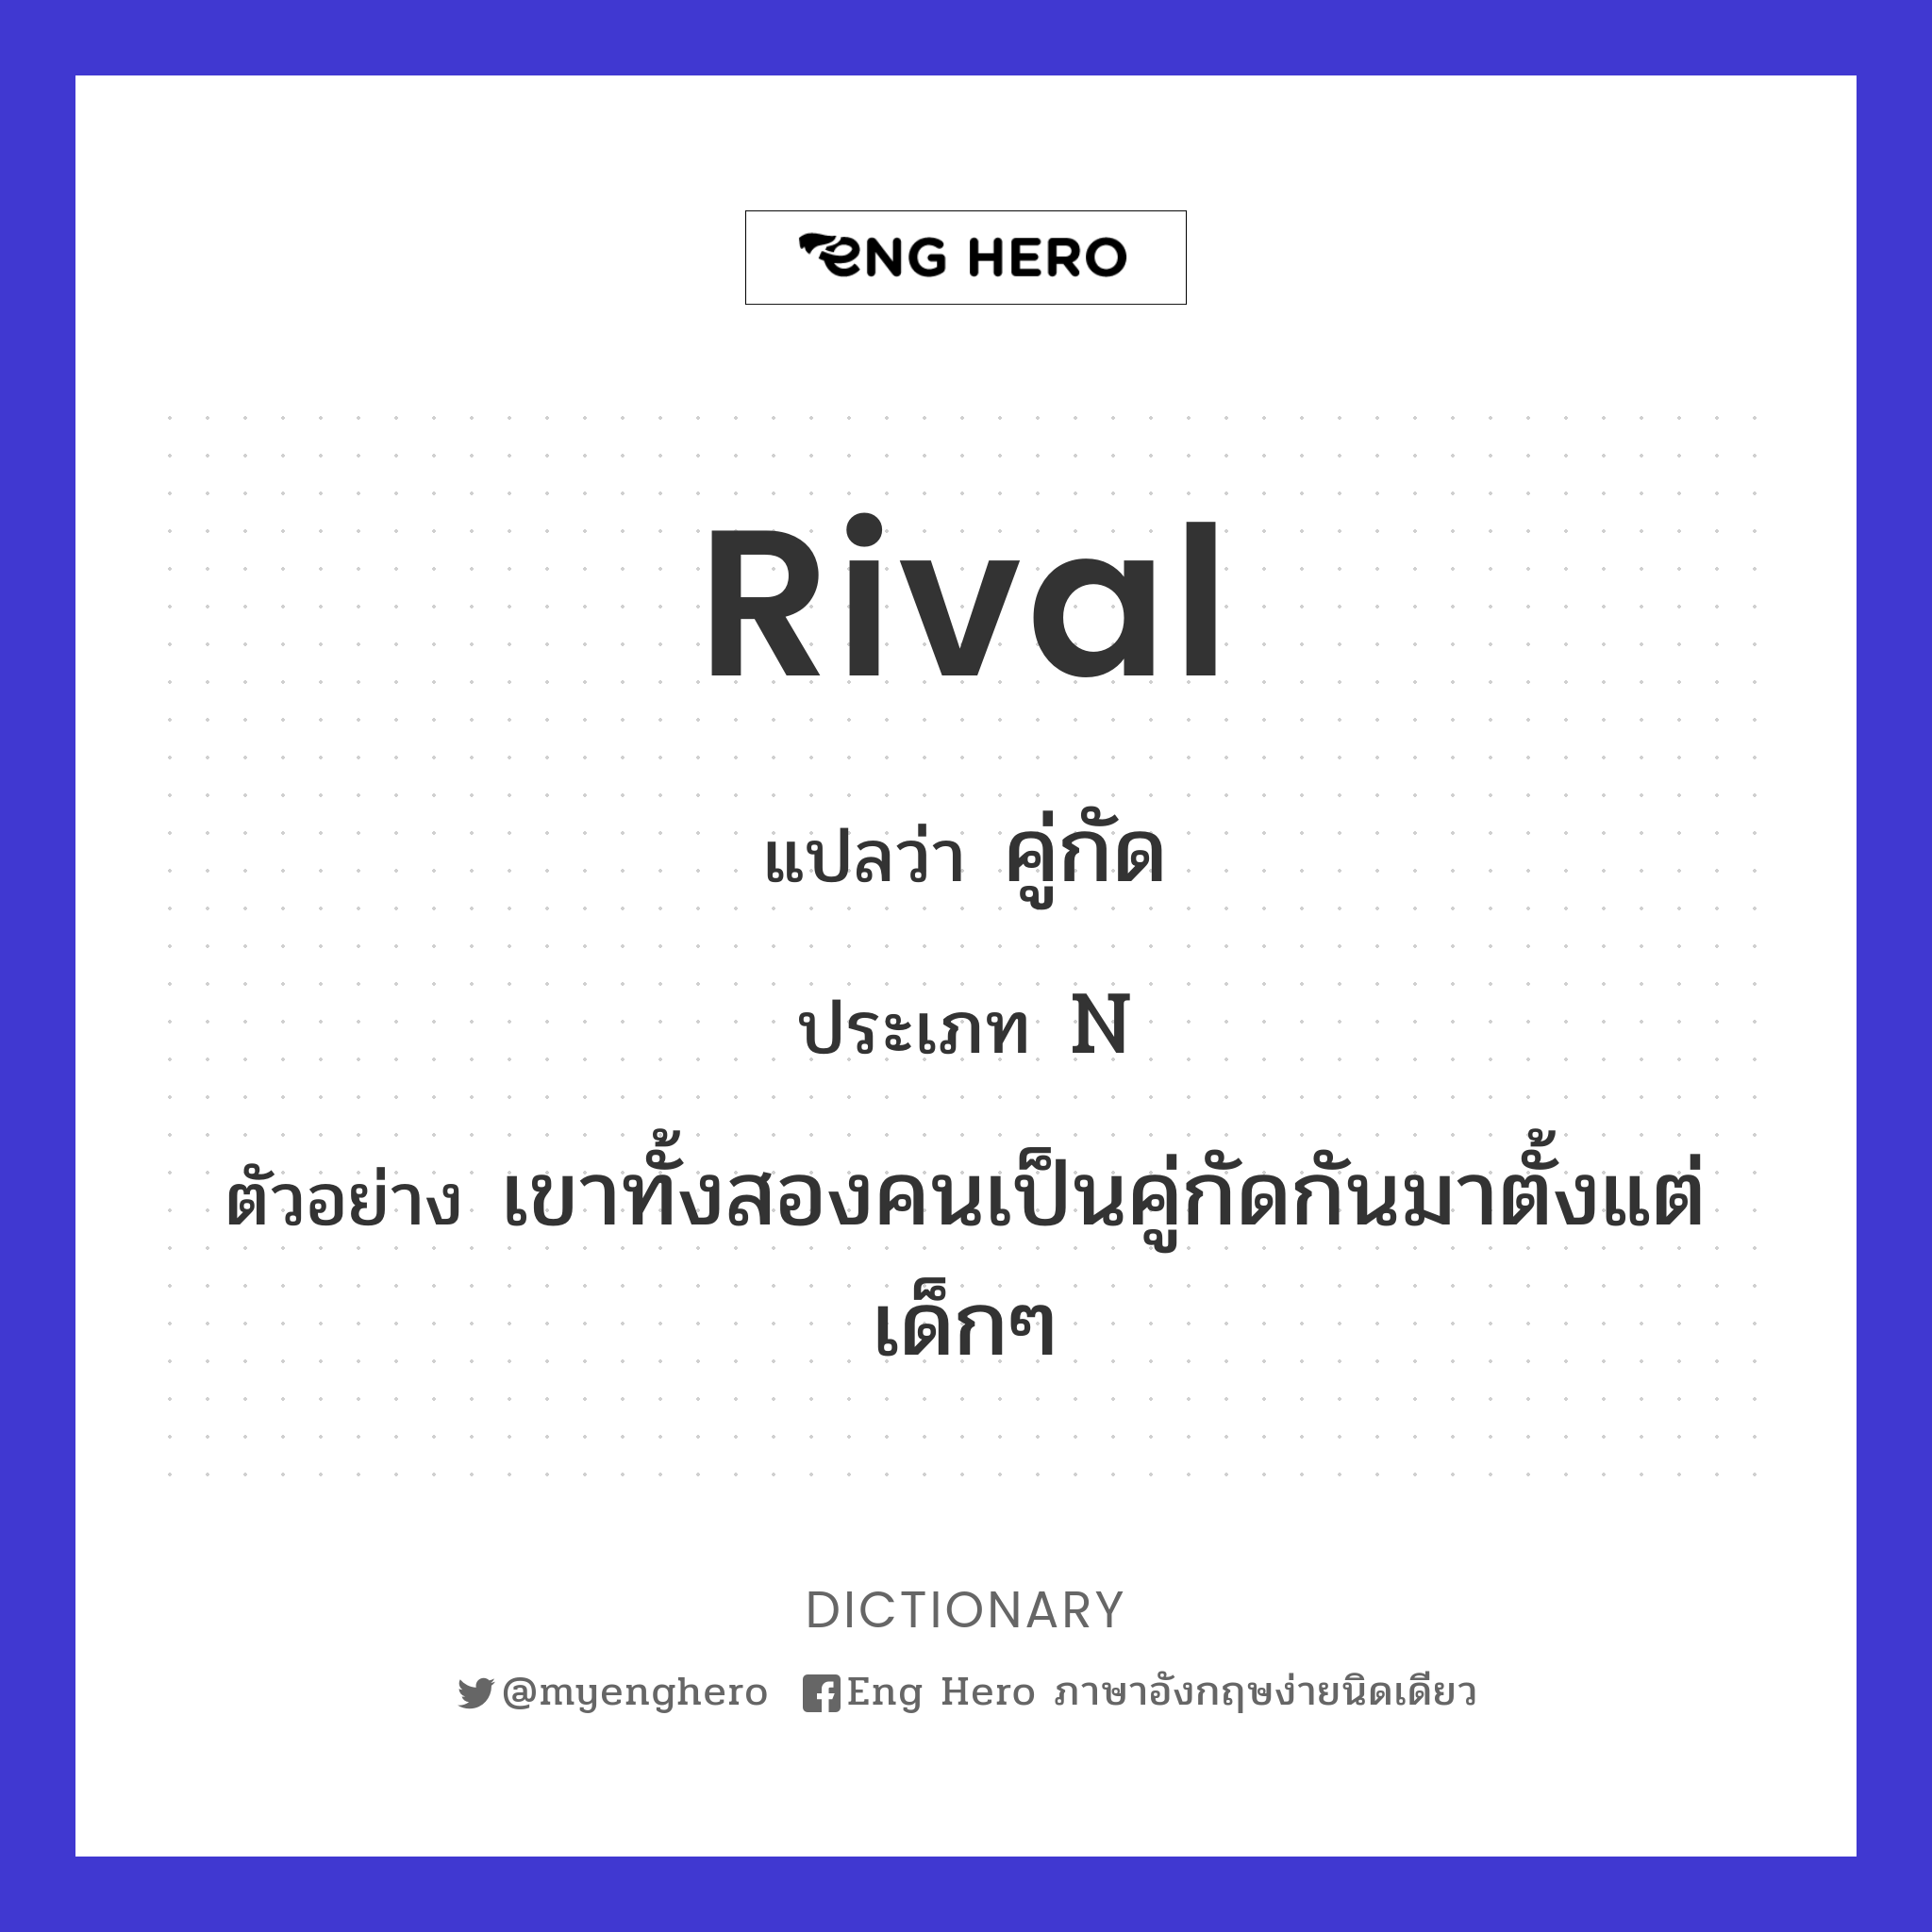 rival